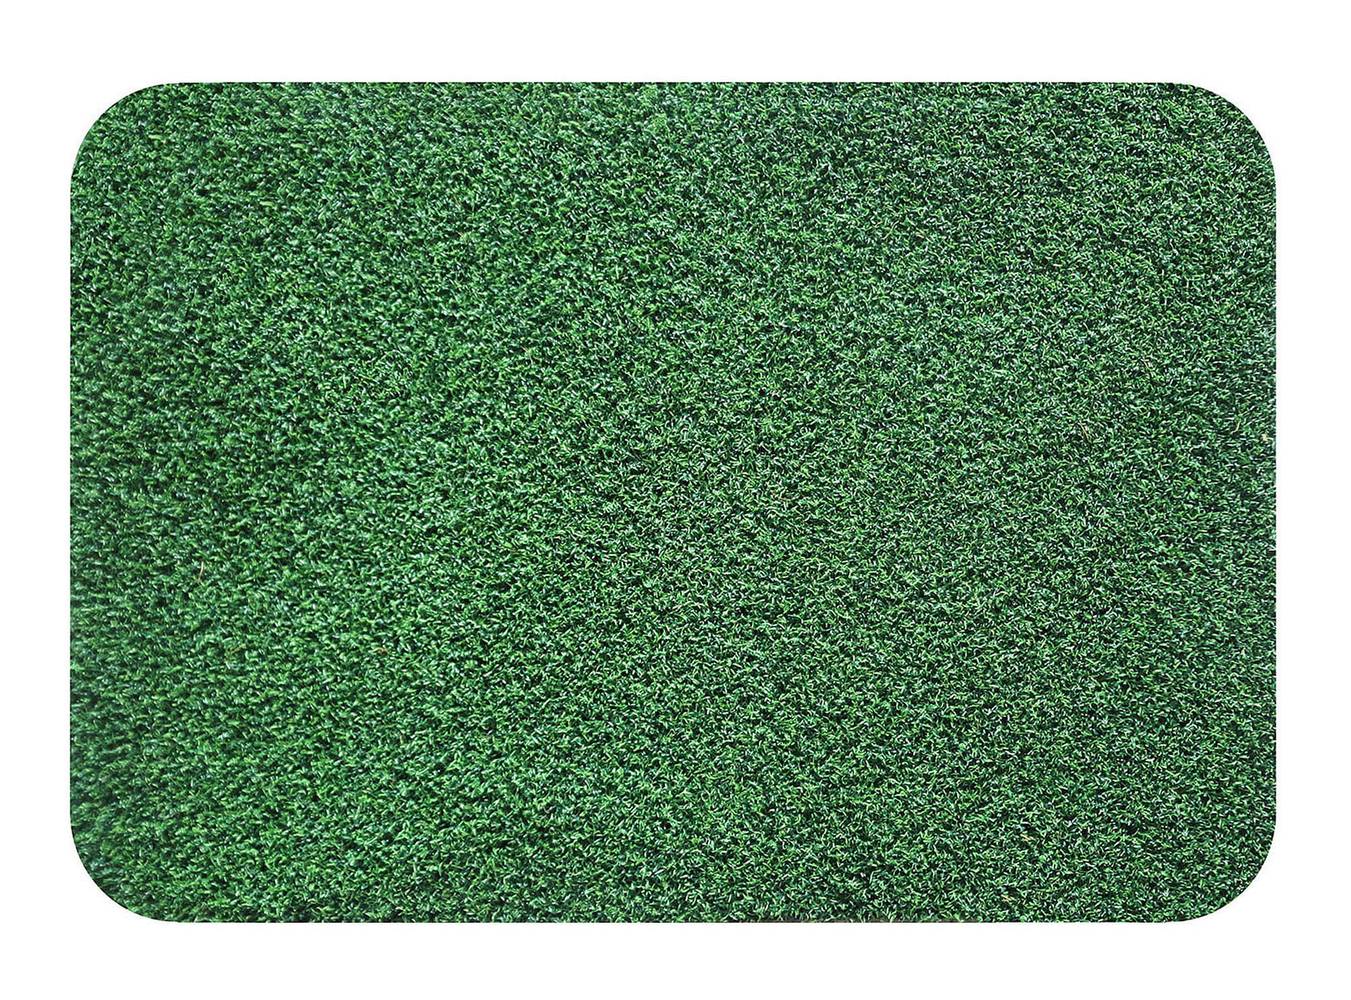 Cotidiana limpiapiés símil pasto (40 x 60 cm)